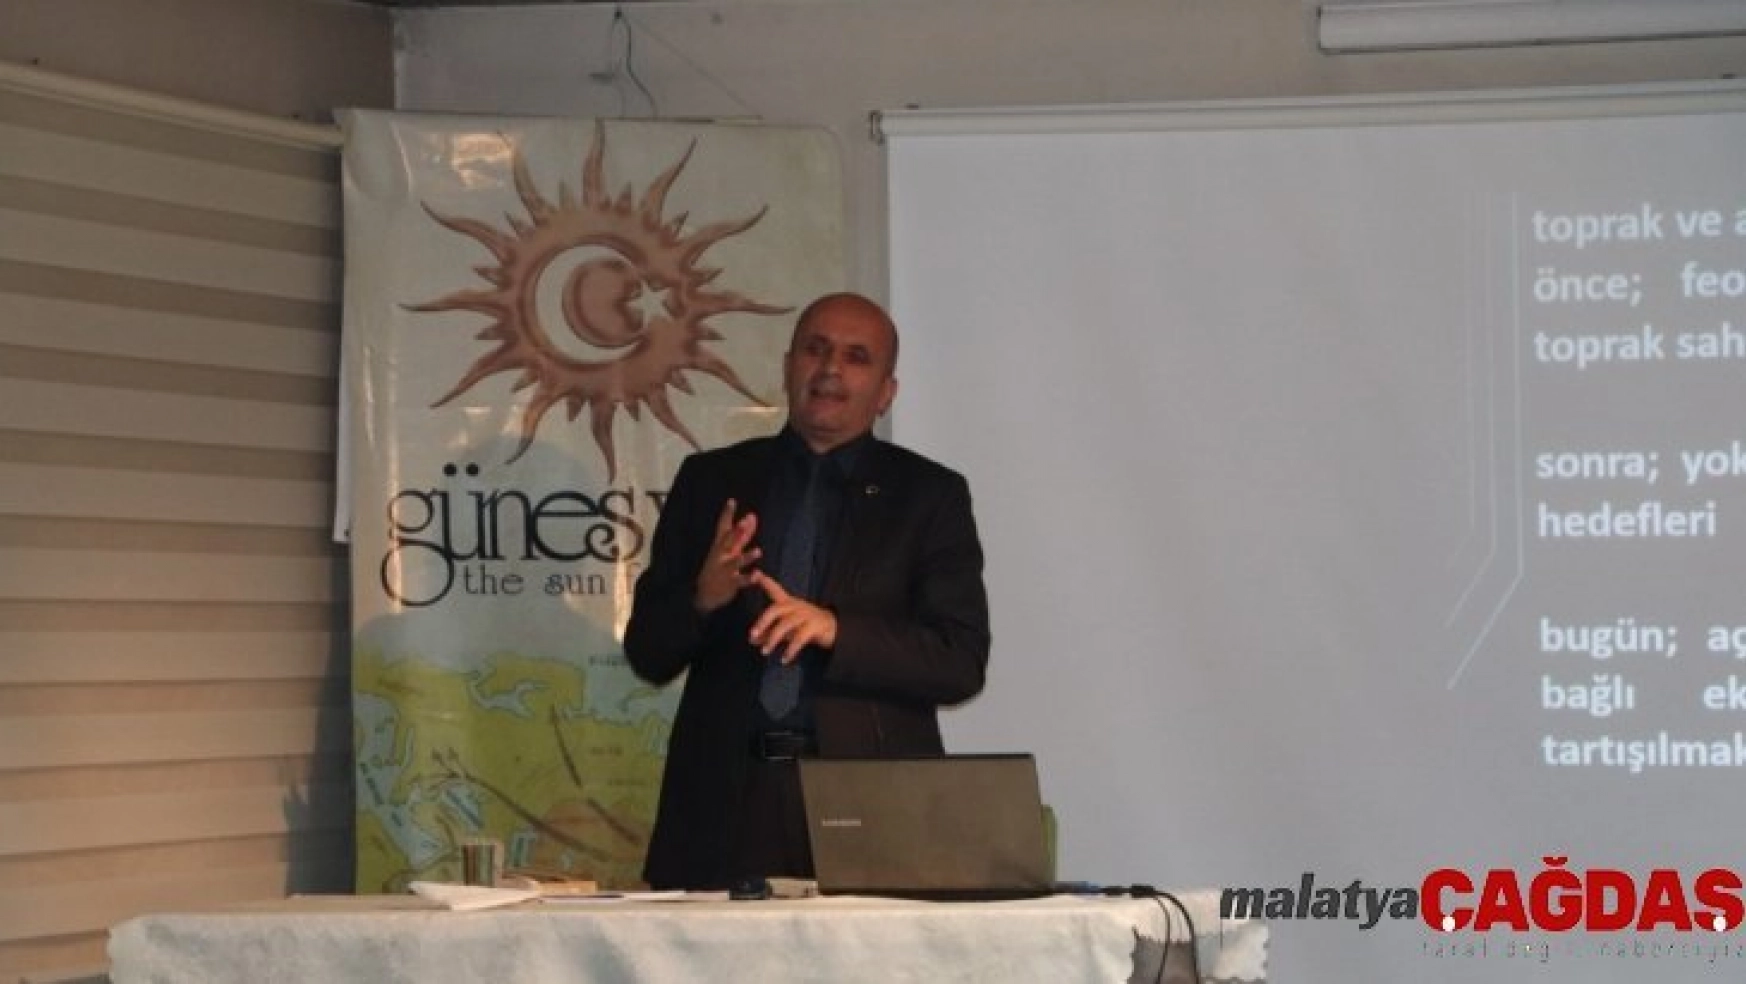 Güneş Vakfı'nda 'Dünya Toprak Kaynakları ve Sorunları' konferansı